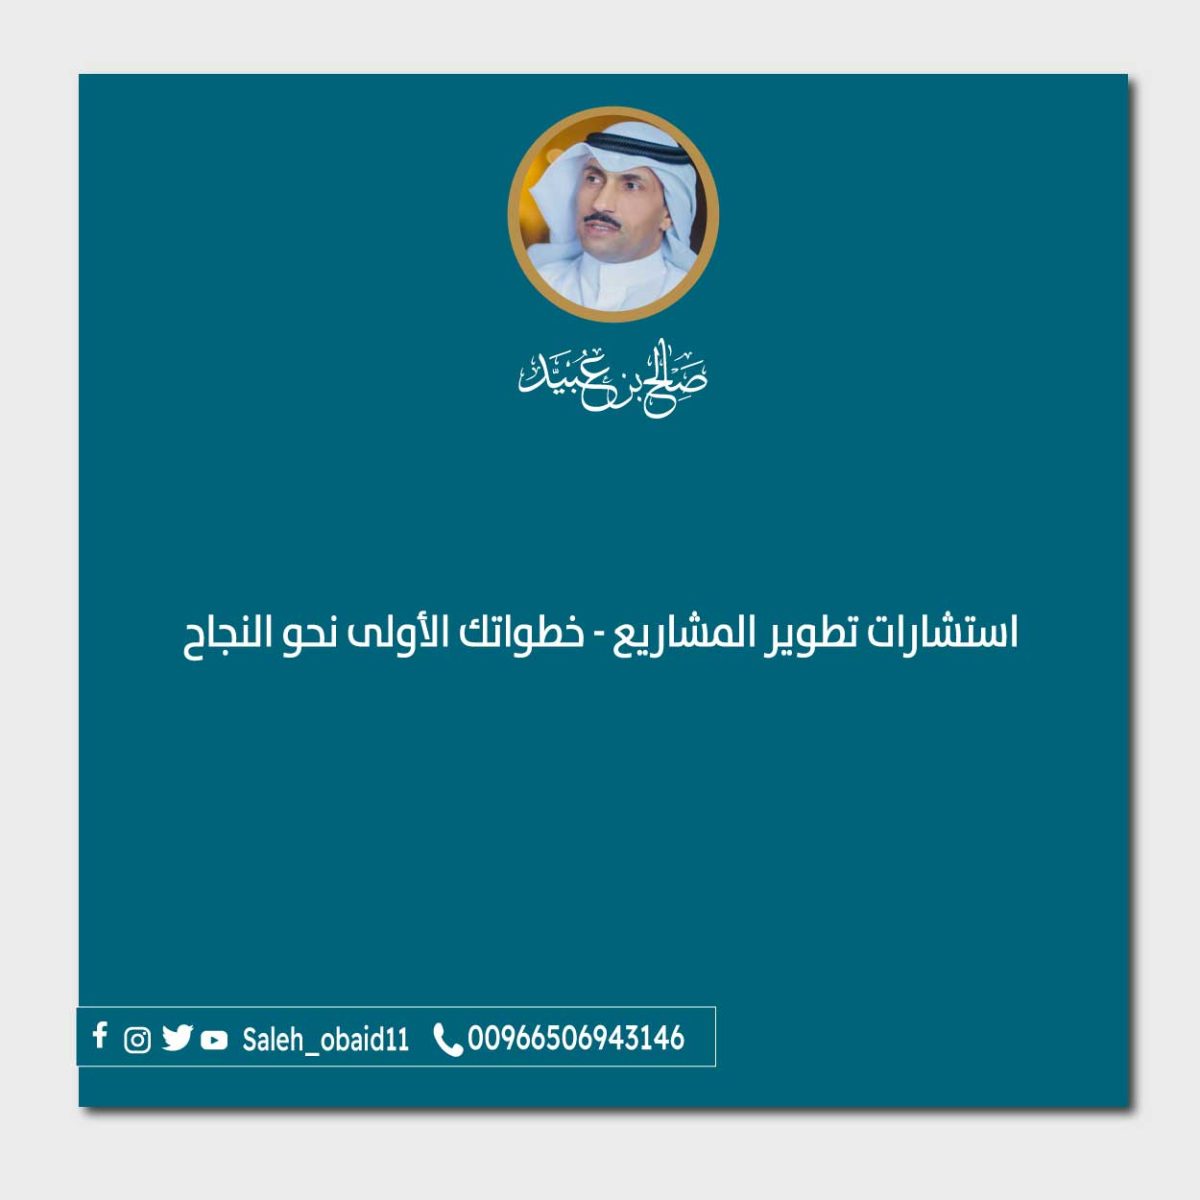 استشارات-تطوير-المشاريع-الصغيرة-في-السعودية-خطواتك-الأولى-نحو-النجاح-1200x1200.jpg